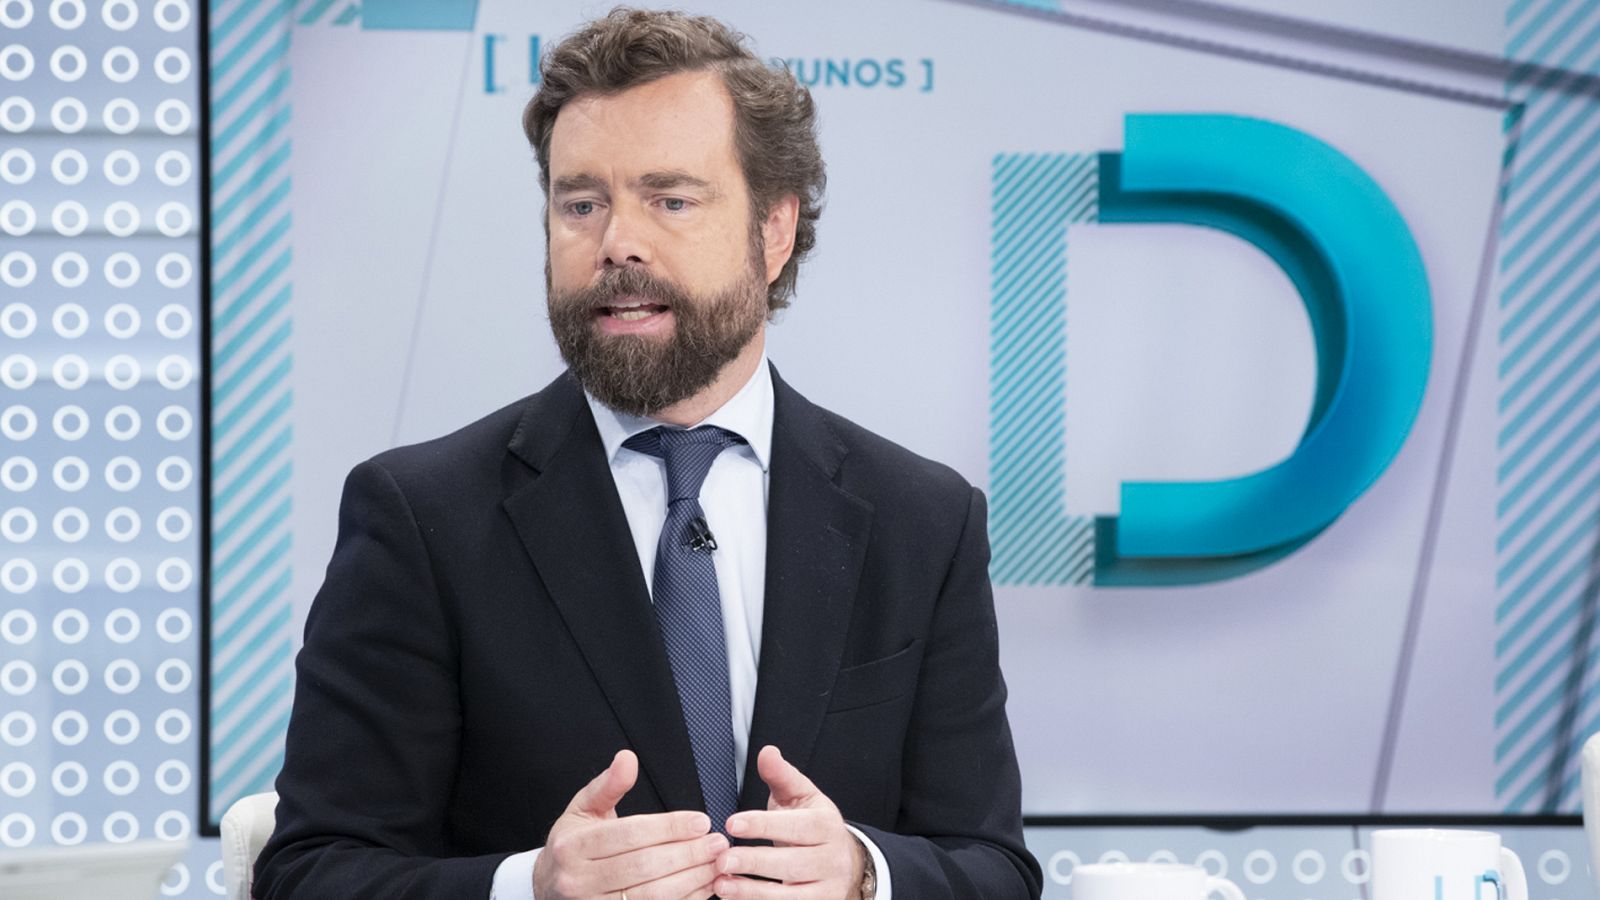 Elecciones generales: Espinosa de los Monteros (Vox): "Los partidos que no creen en la soberanía nacional, no deberían jugar en el parlamento español" - RTVE.es